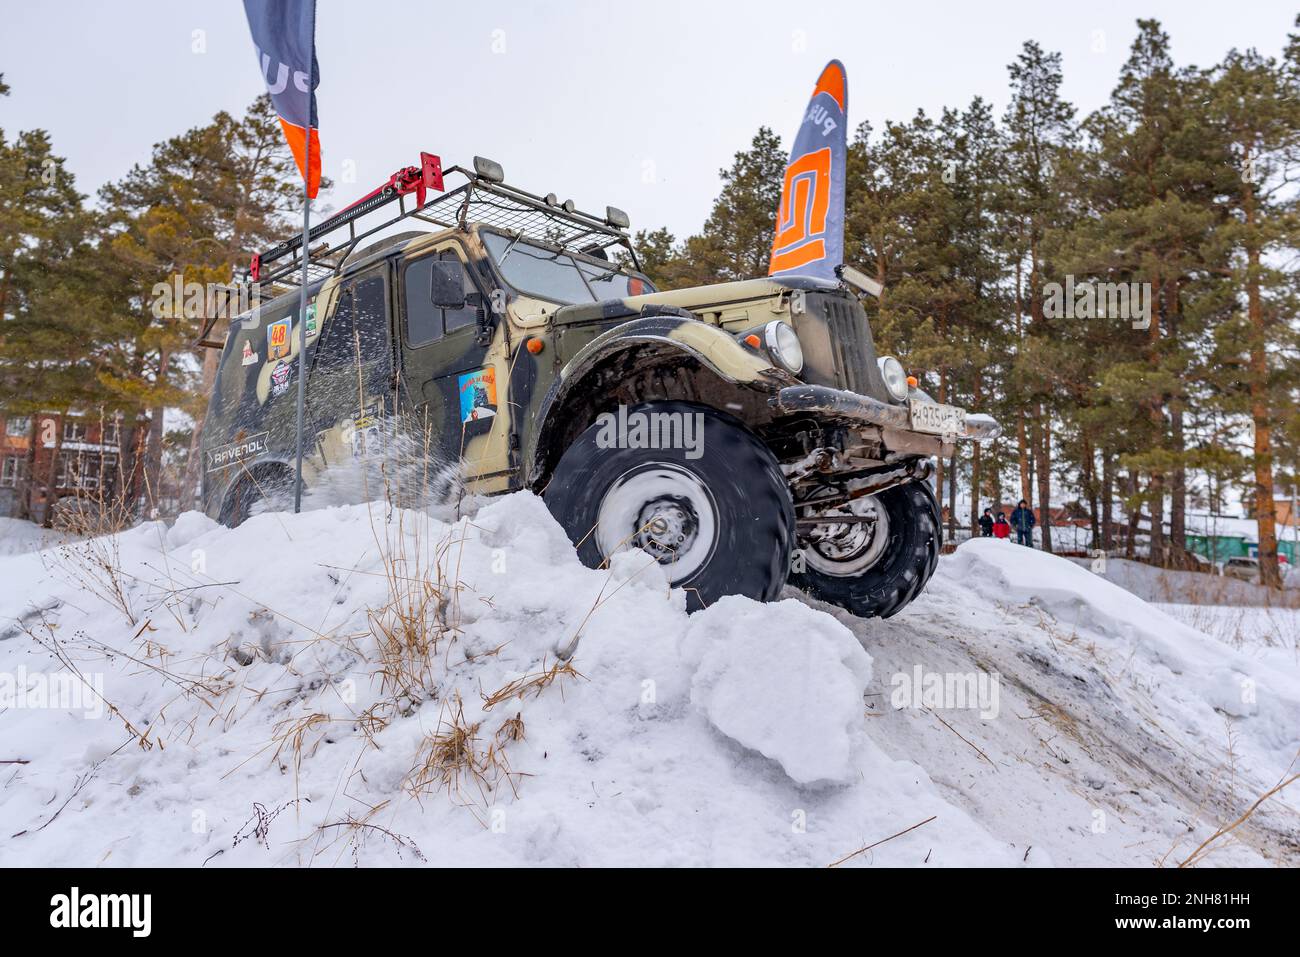 Le vieux SUV russe « gaz69 4x4 » soulève rapidement la neige en hiver sur une colline avec des drapeaux d'arrivée. Banque D'Images